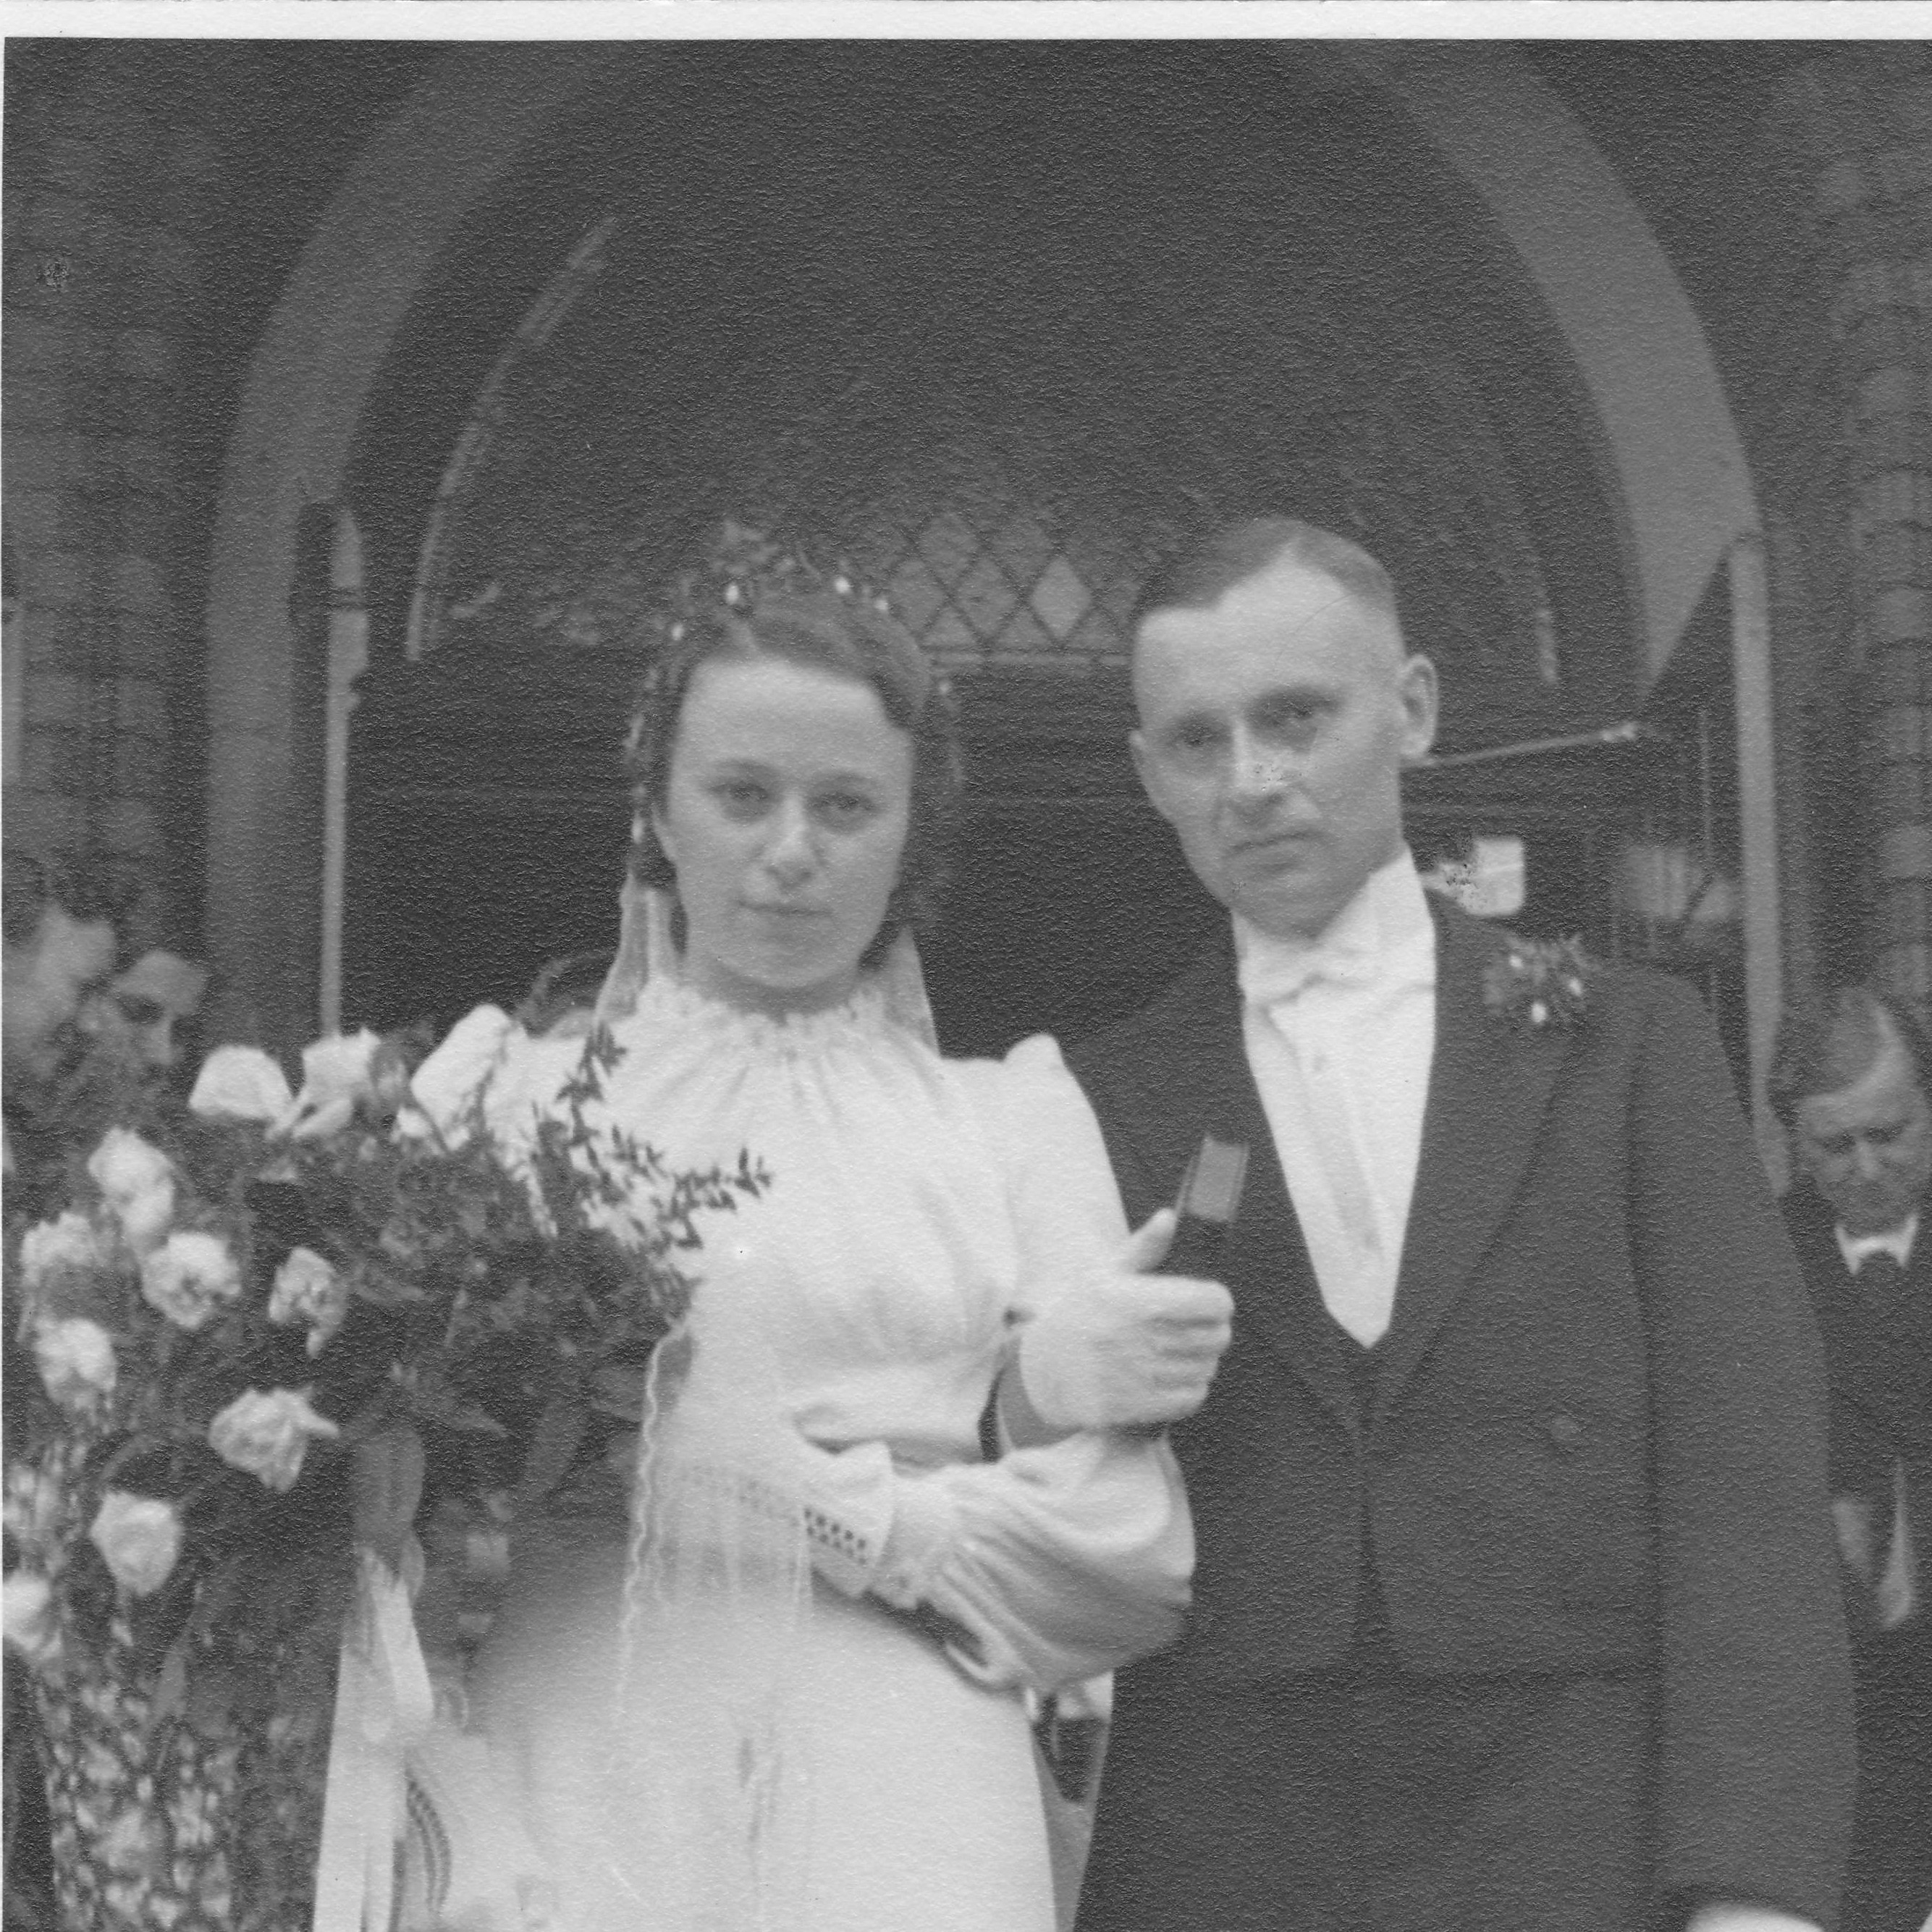 "Ba-OBFK01Ff3A4. Ausschnitt aus Fotoalbum. Oberfrohna, 13.7.1940. Hochzeitsbild von Hilde und Roland Nordhoff. Nahaufnahme in Hochzeitskleidung."